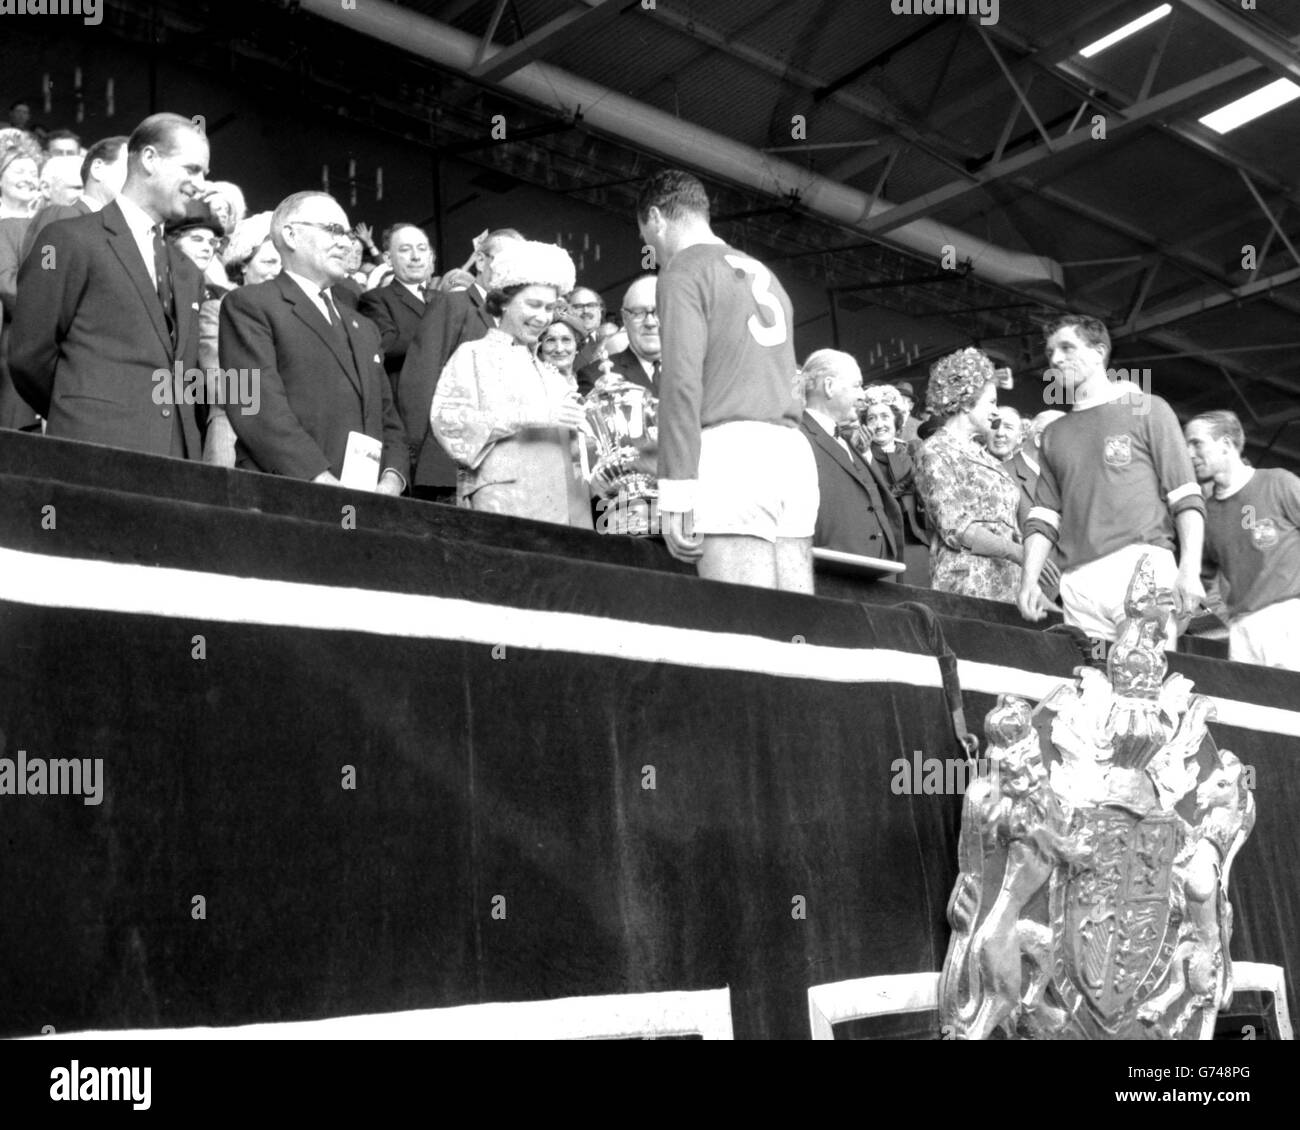 La regina, vestita in lana blu Cambridge con un cappello a petalo abbinato, presenta la fa Cup a Noel Cantwell, a sinistra e capitano di Manchester United, a Wembley. Accompagnata dal duca di Edimburgo, aveva guardato United battere Leicester City 3-1 nella finale di Coppa. Foto Stock